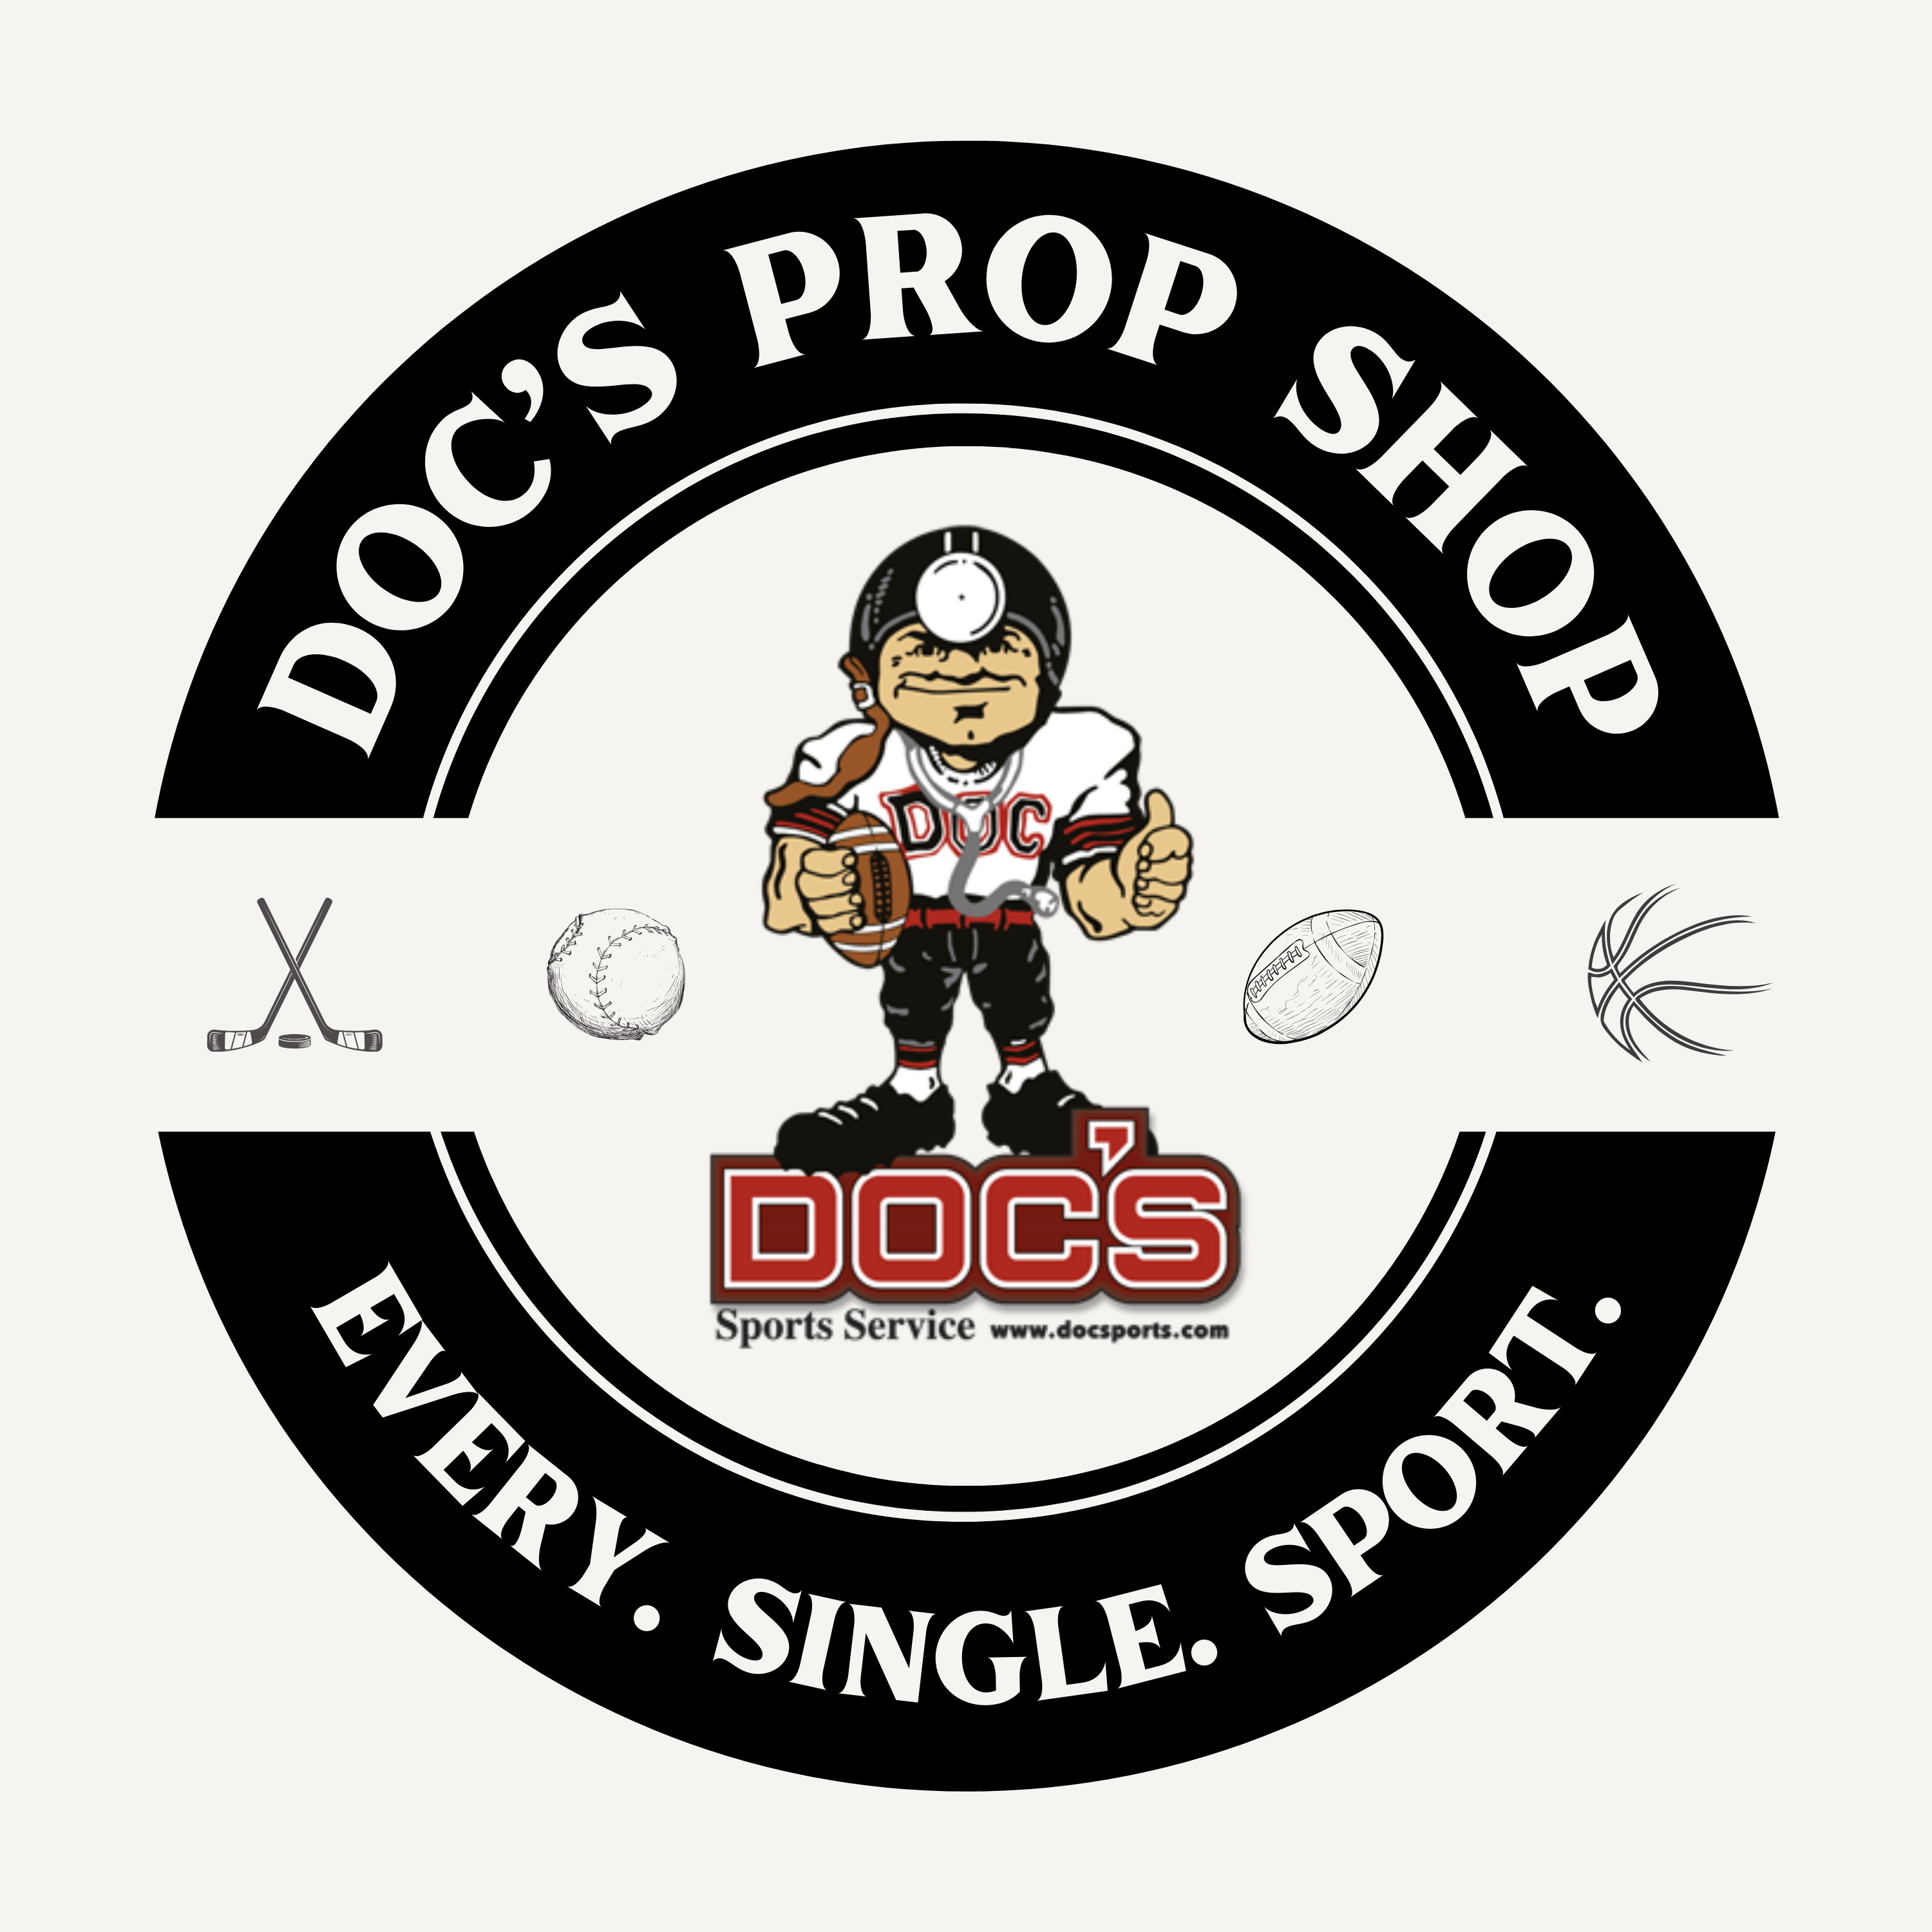 Doc's Prop Shop